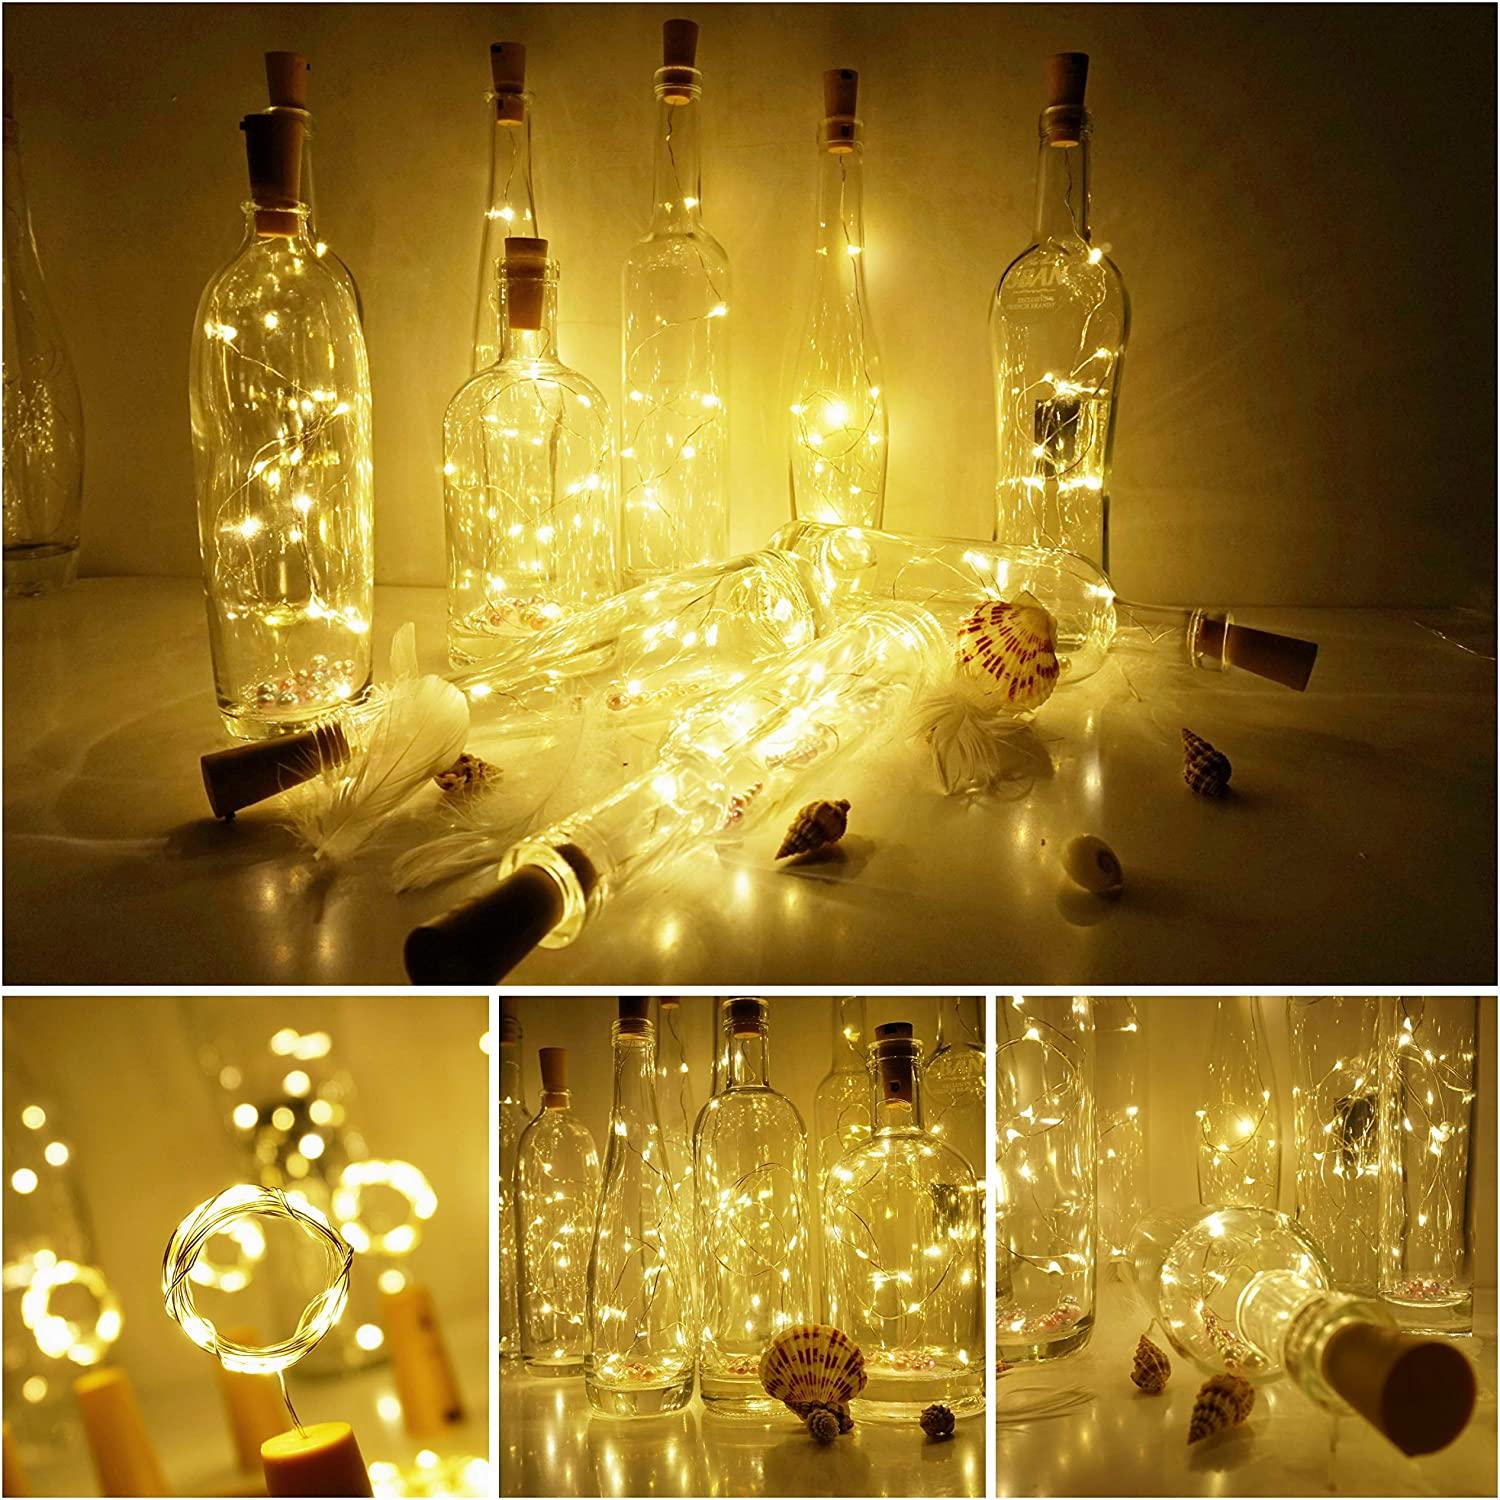 Wine Bottle Cork Lights Wine Bottle Lights with Cork Ideas - Decotree.co Online Shop